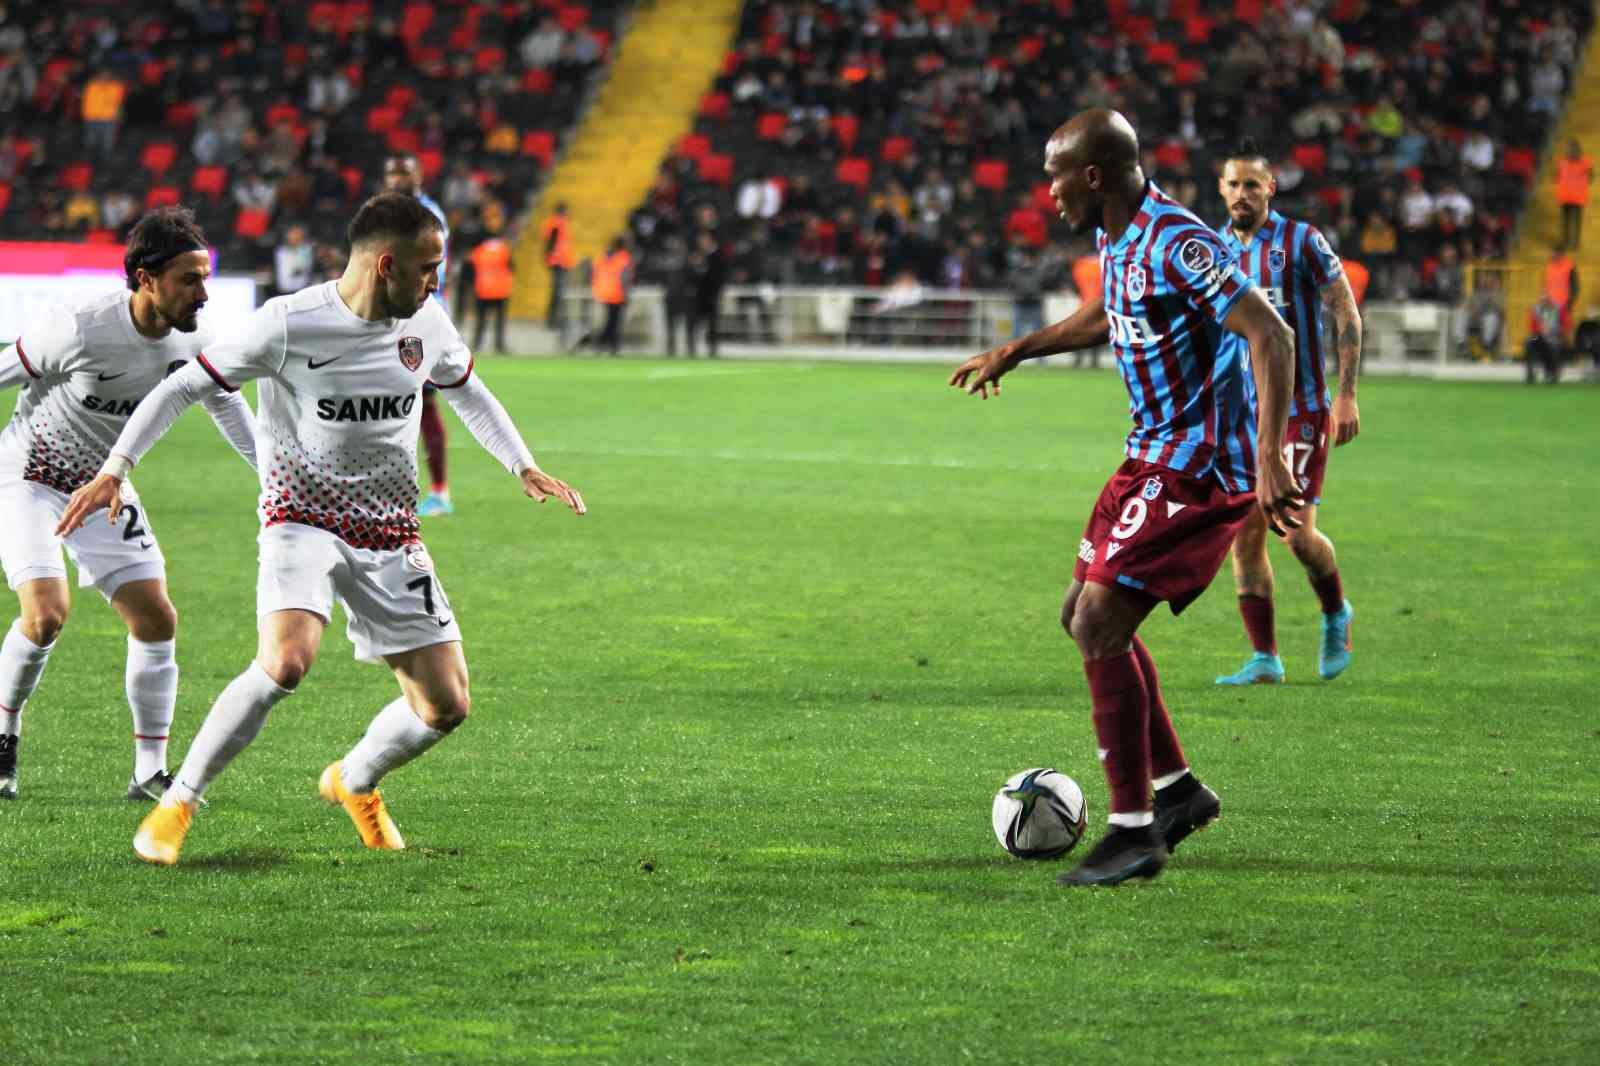 Süper Lig: Gaziantep Fk: 0 - Trabzonspor: 0 